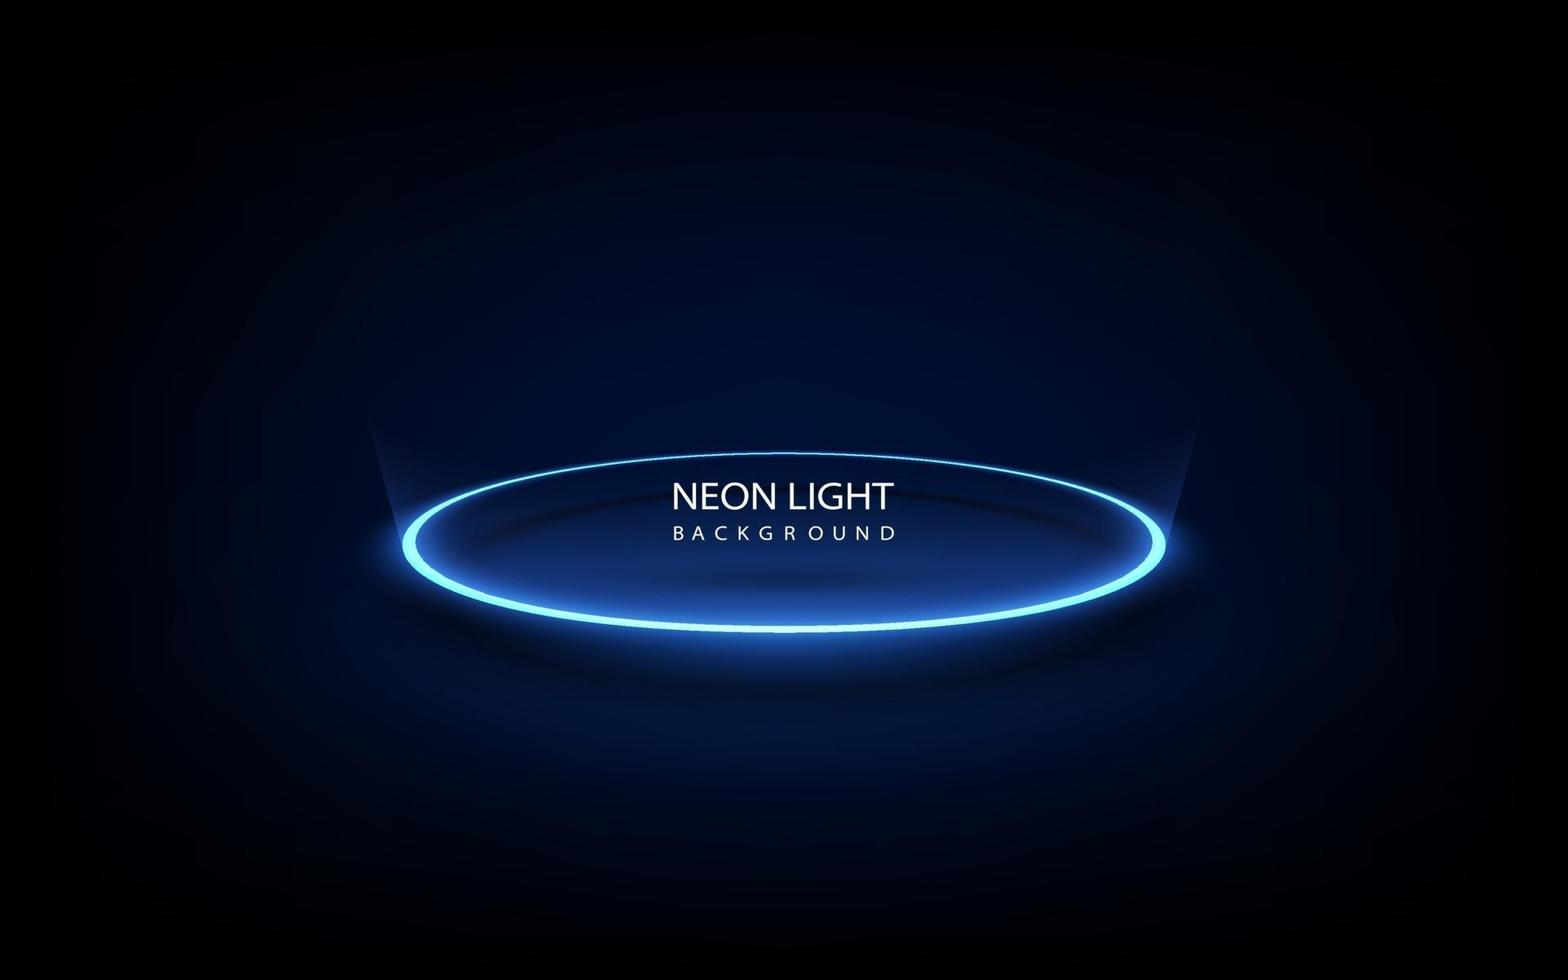 cornice del cerchio di luce al neon blu su sfondo. illustrazione vettoriale